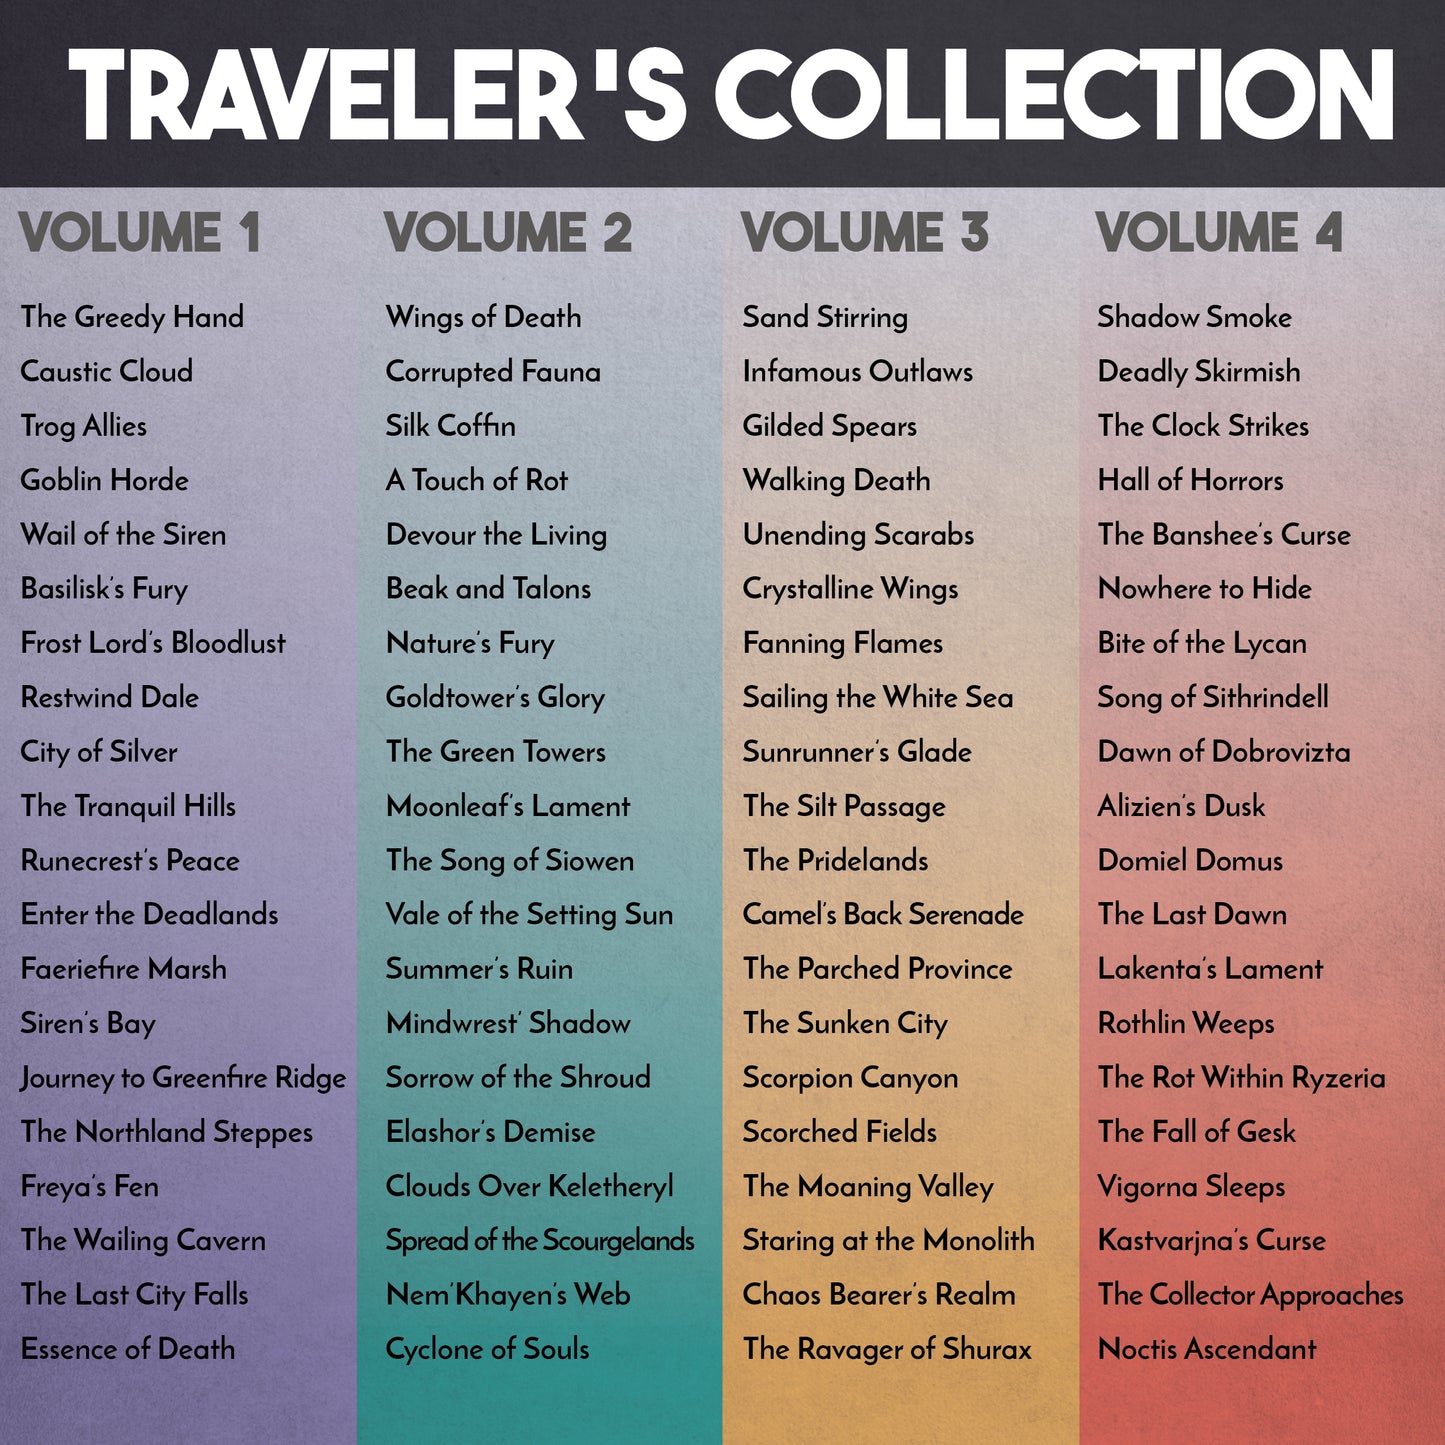 HEXplore It Soundtrack - Traveller's Collection